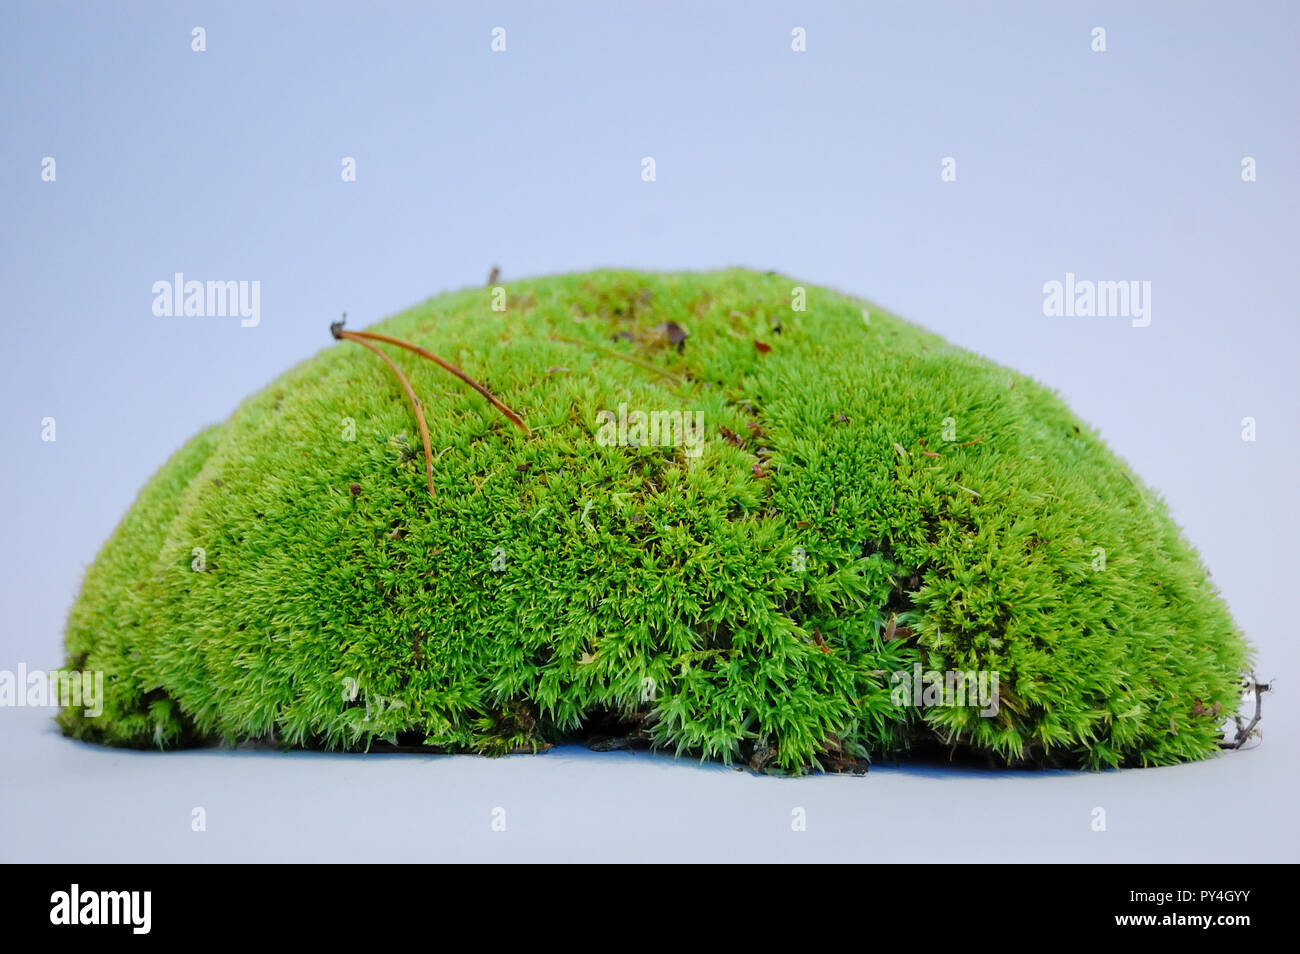 bryophyta moss isolated on white background Stock Photo